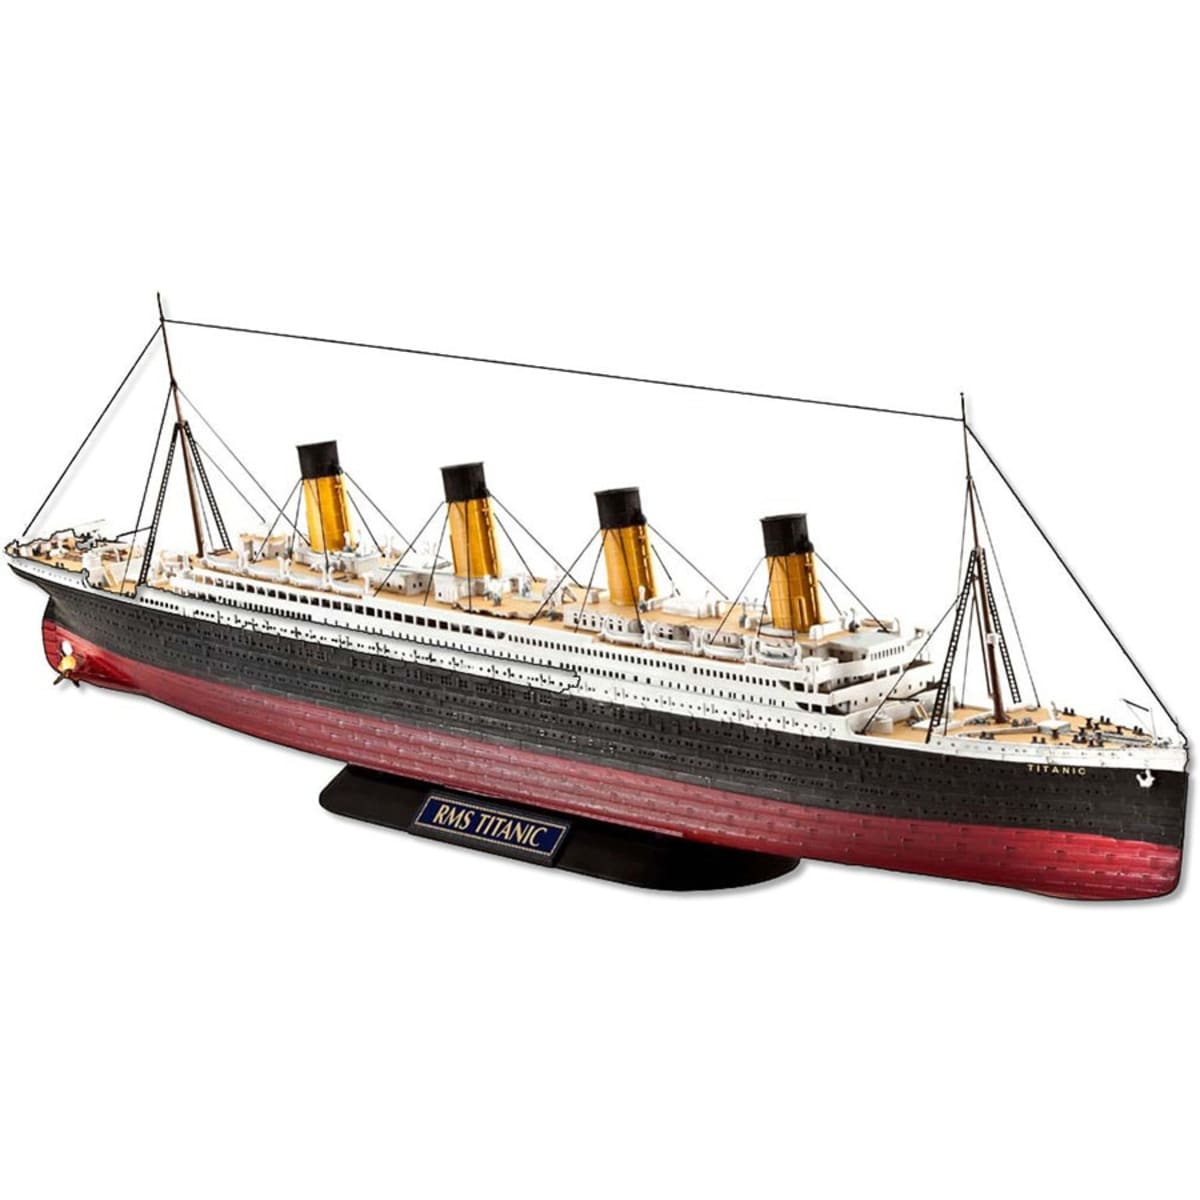 Revell . Titanic 1:700 pienoismalli  verkkokauppa